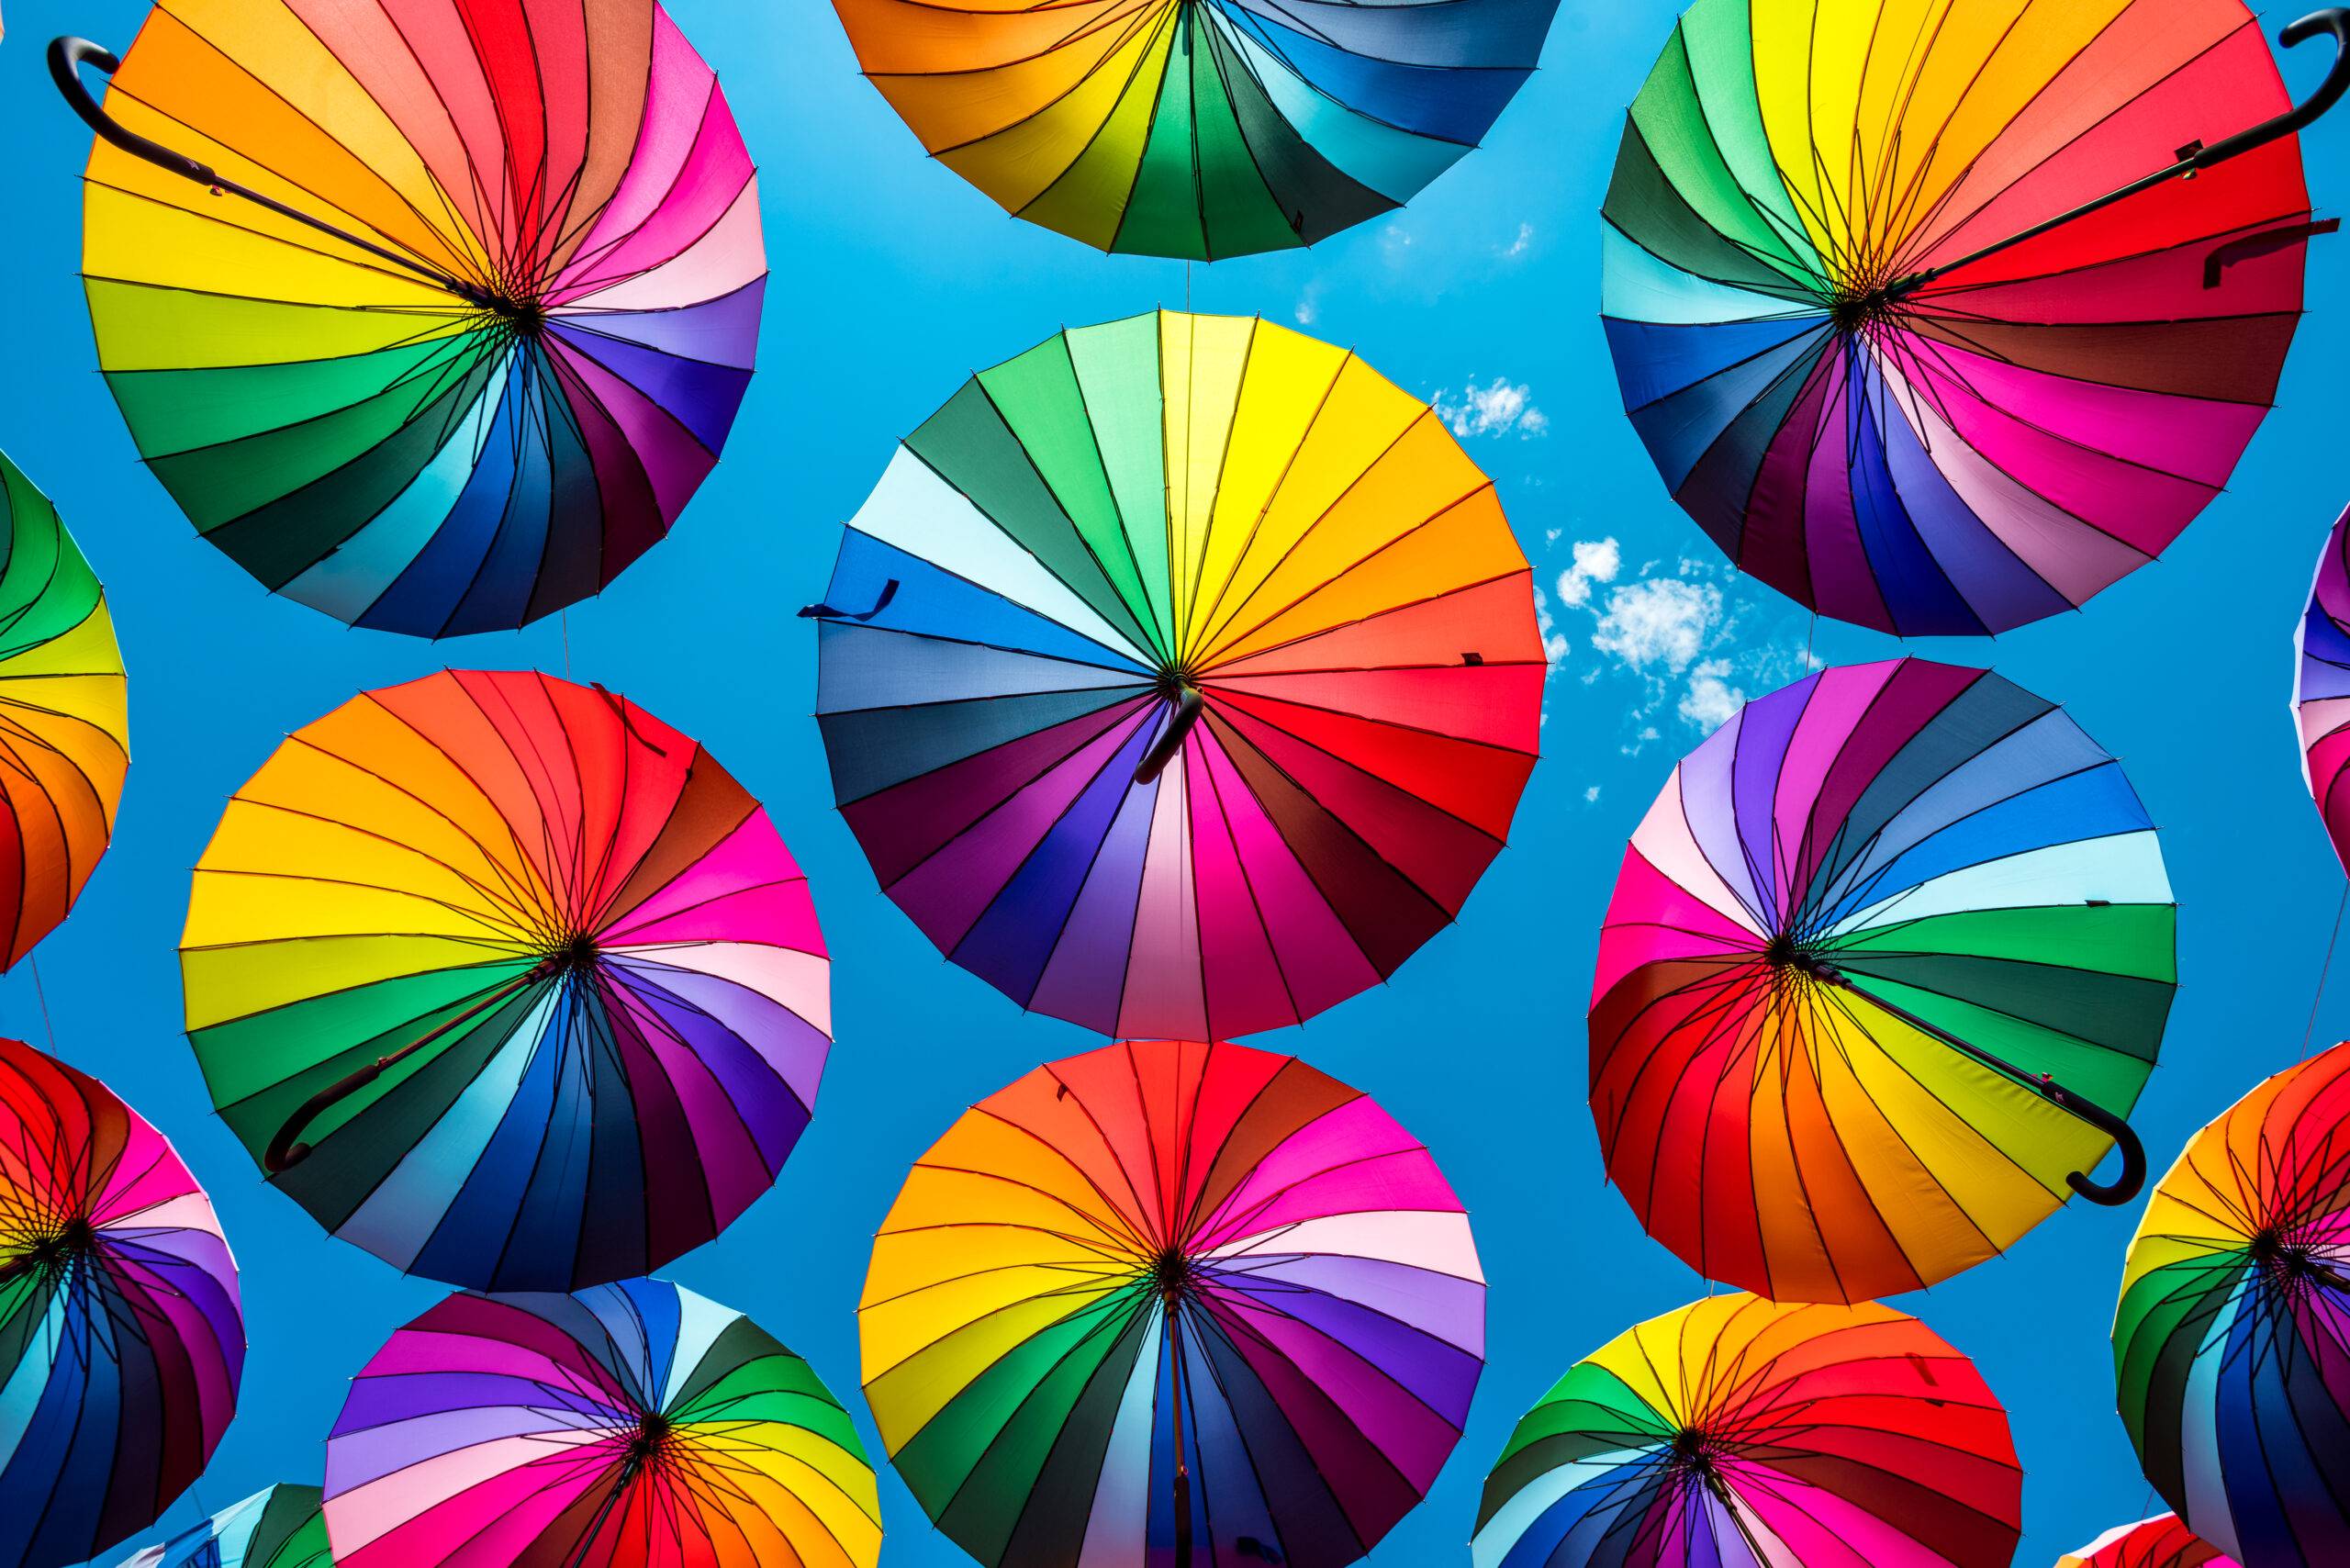 colorful-umbrellas-rainbow-umbrellas-background-2023-11-27-05-33-41-utc-80131-scaled